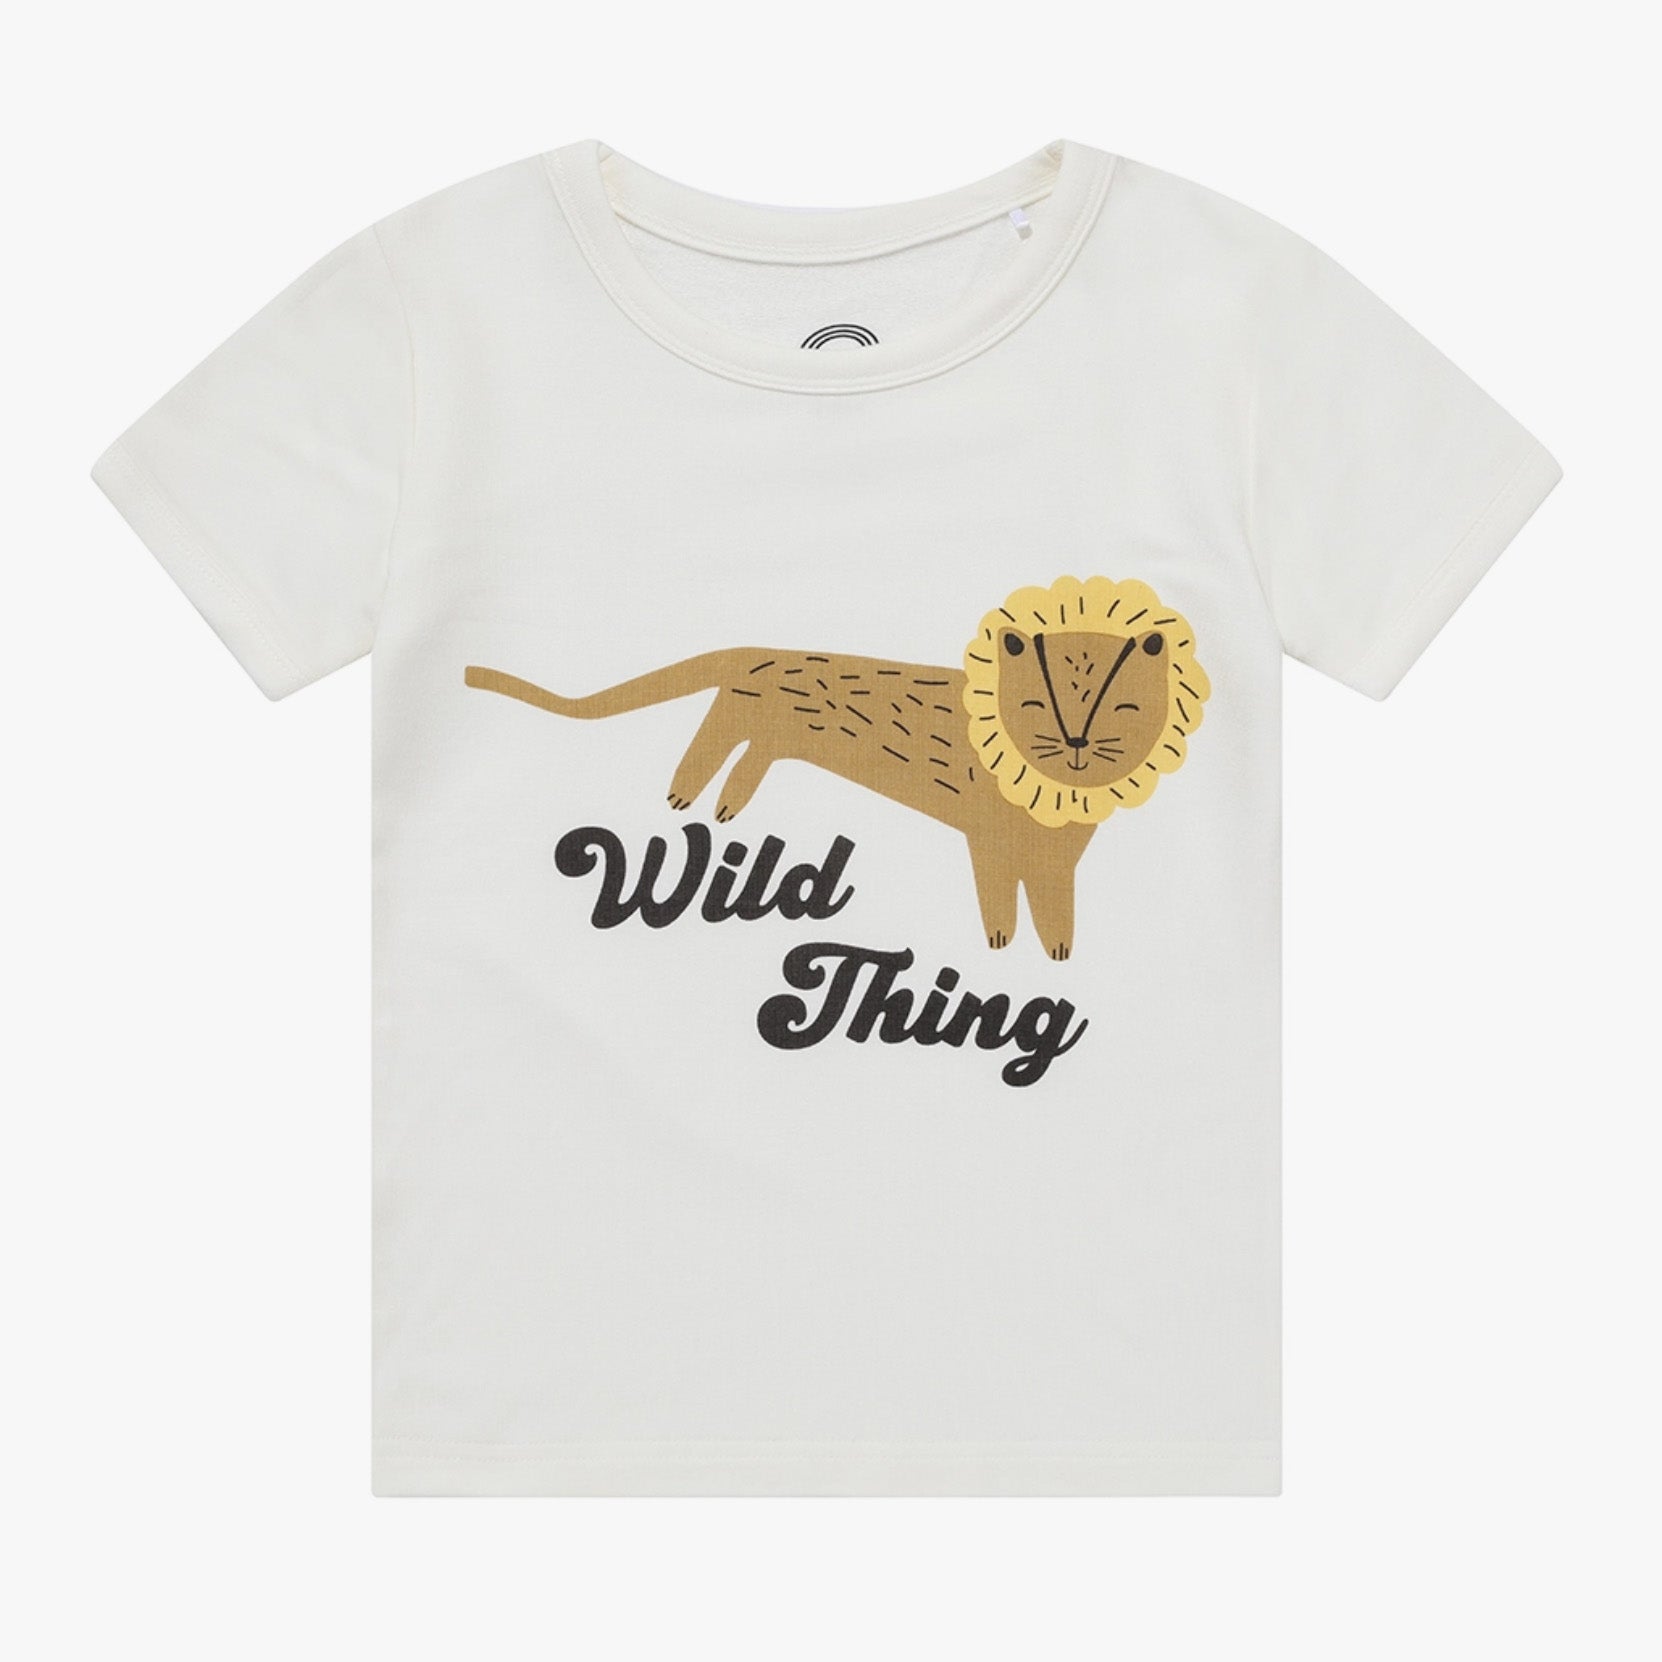 wild thing tee